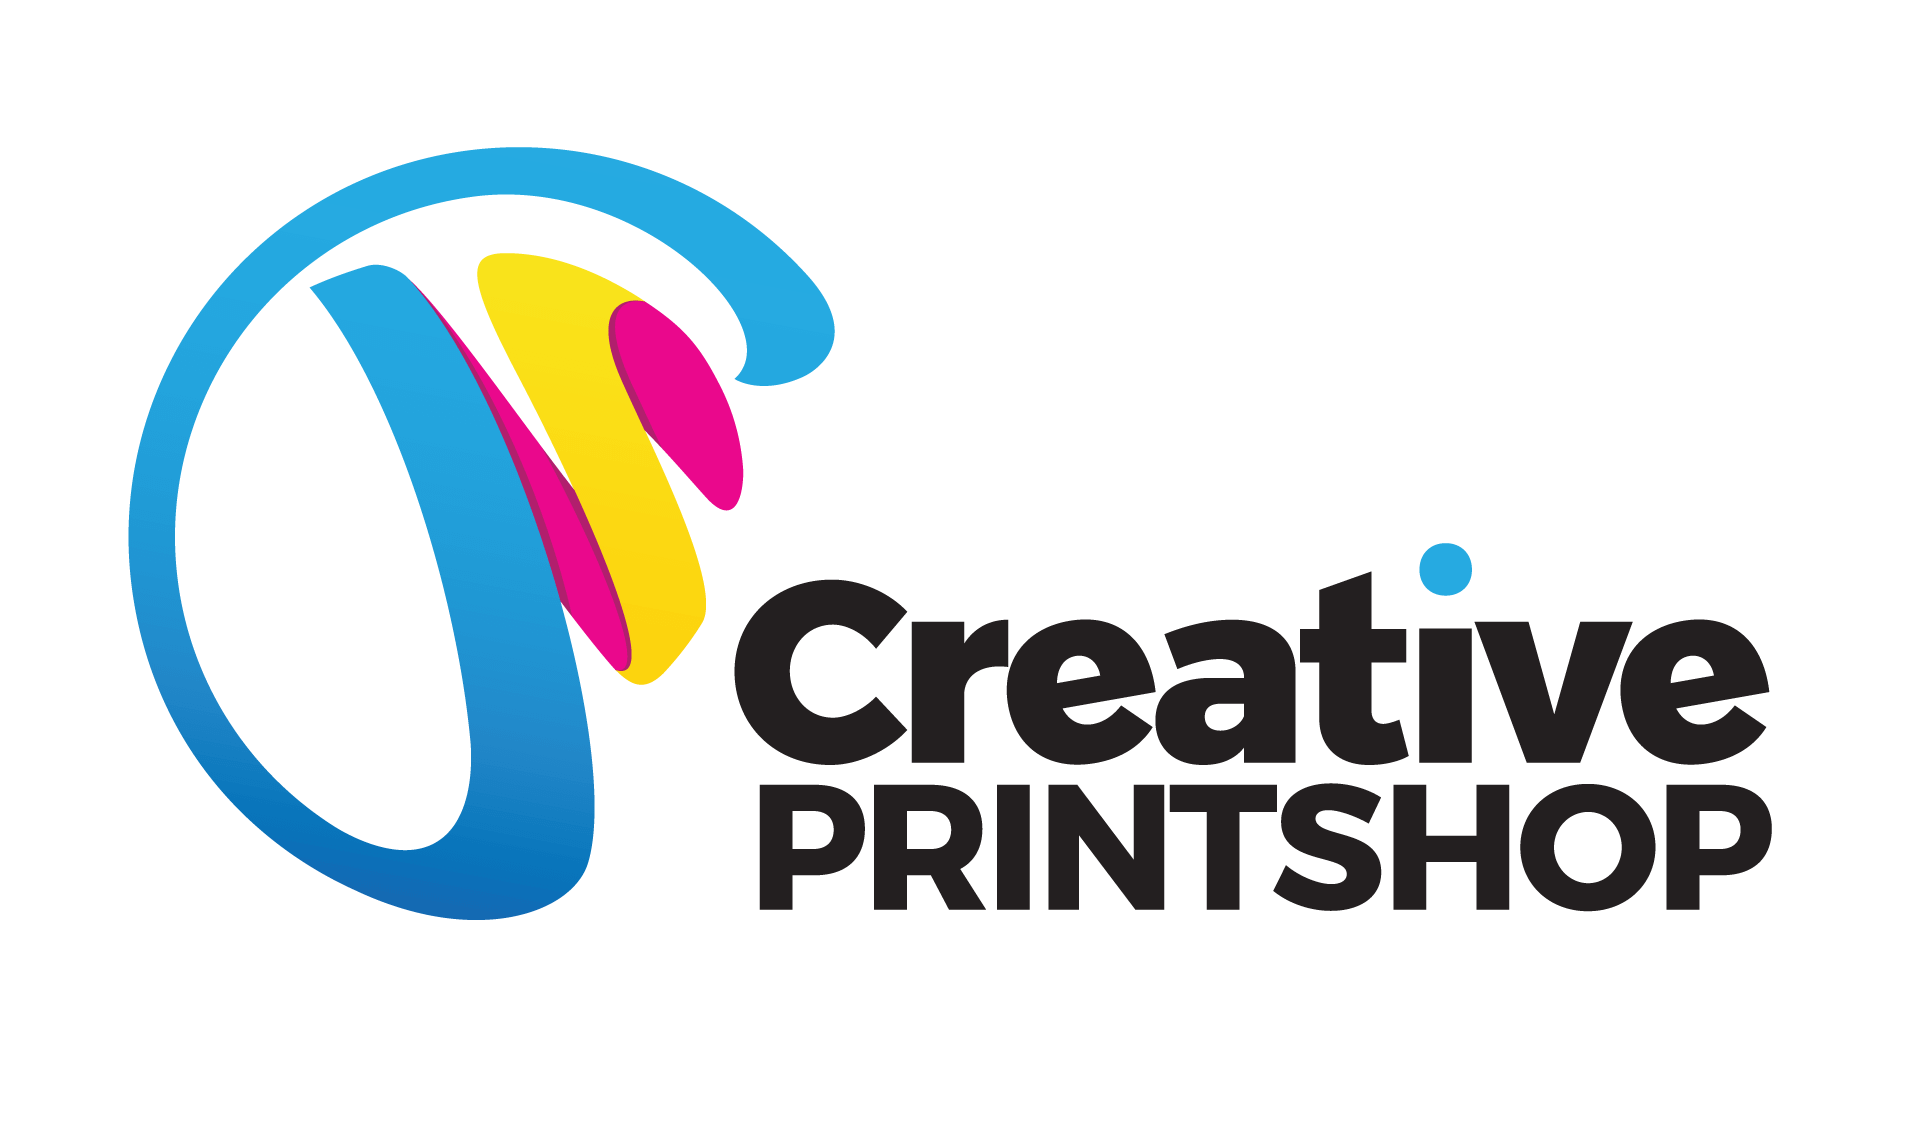 Creative-Print-Shop-FHD